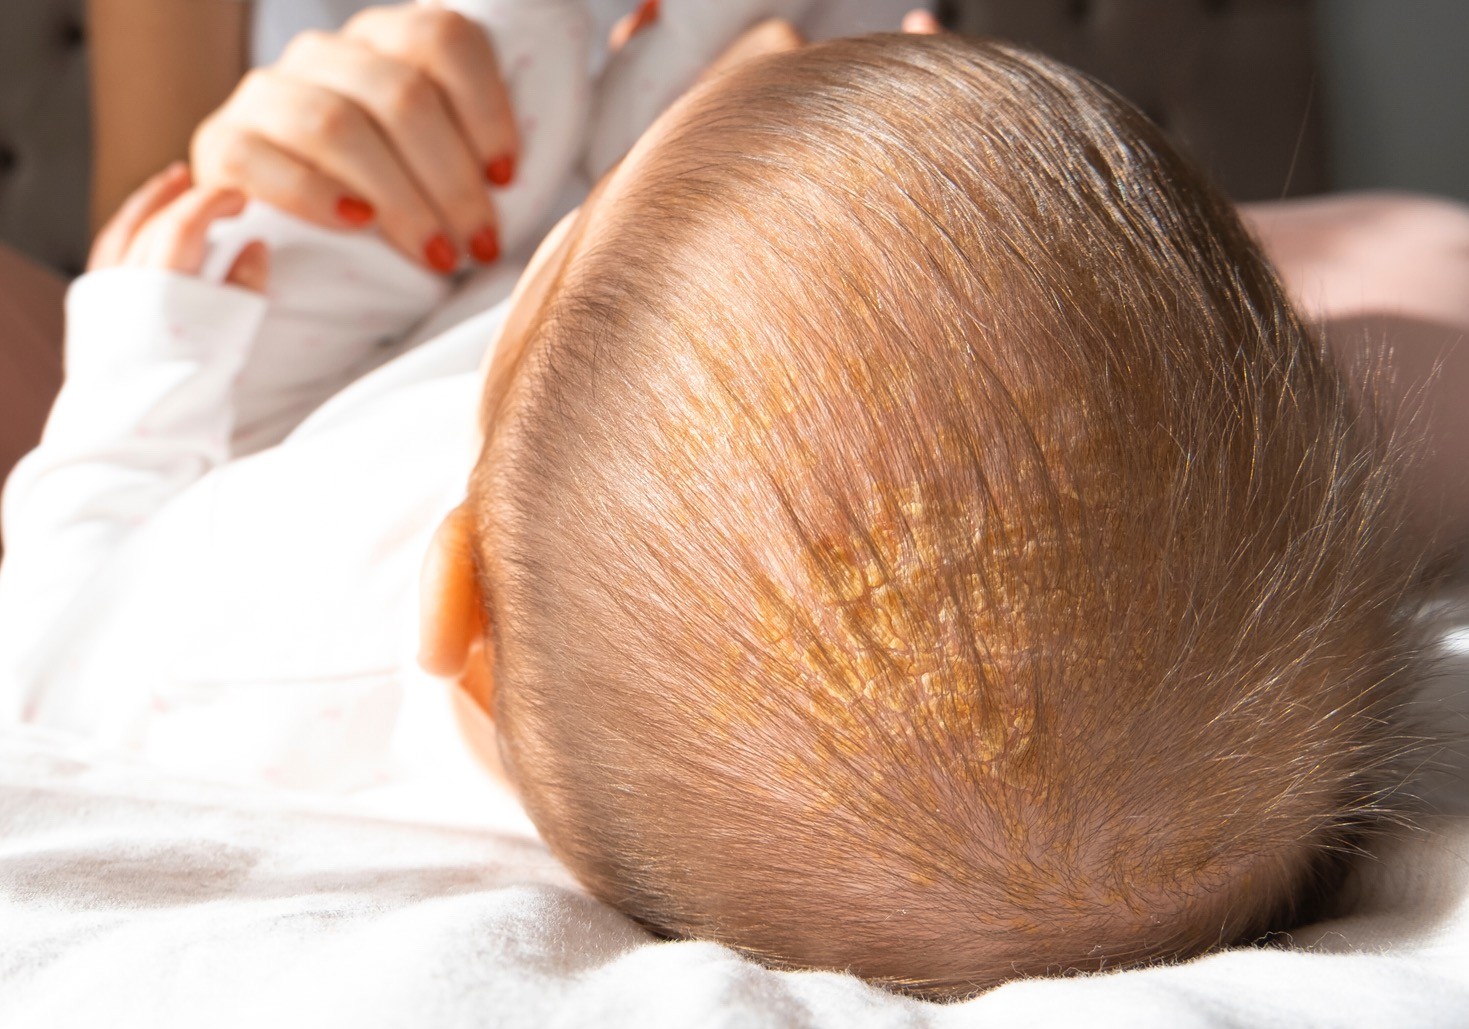 Krastaste naslage masnoće na bebinoj glavi usled temenjače. Bebu ovo stanje ne svrbi i ne boli.